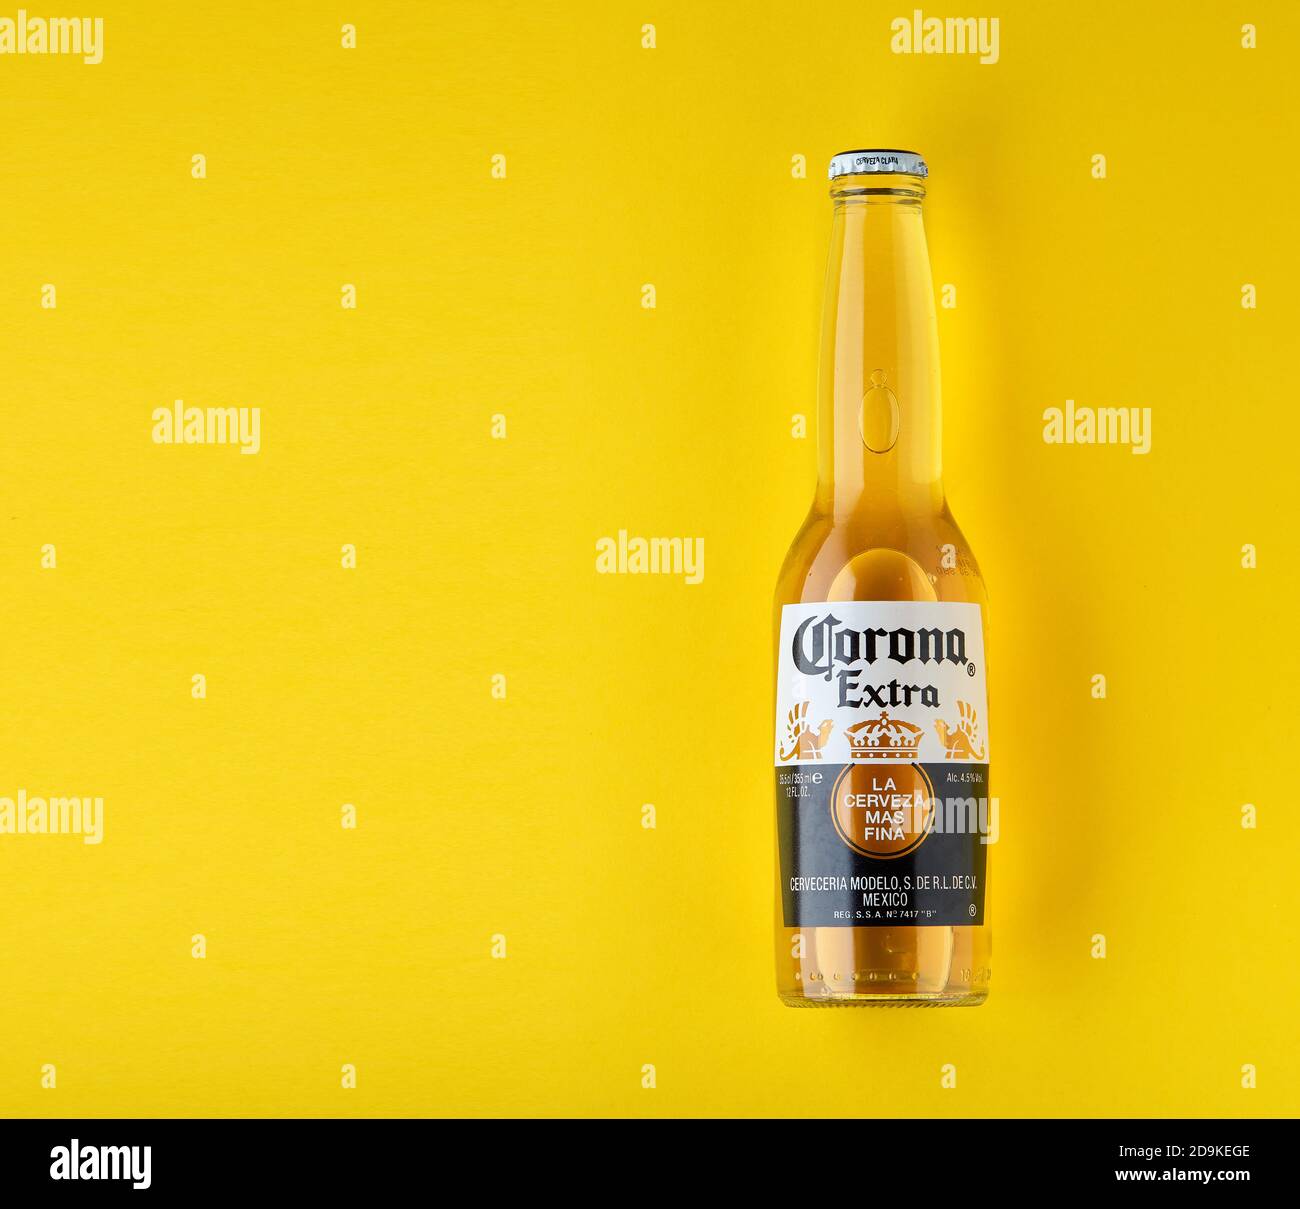 Bouteille de Corona Extra Beer. Sur fond jaune. Corona est fabriquée au Mexique et est la bière importée la plus vendue aux États-Unis. 13.03.2020 Banque D'Images